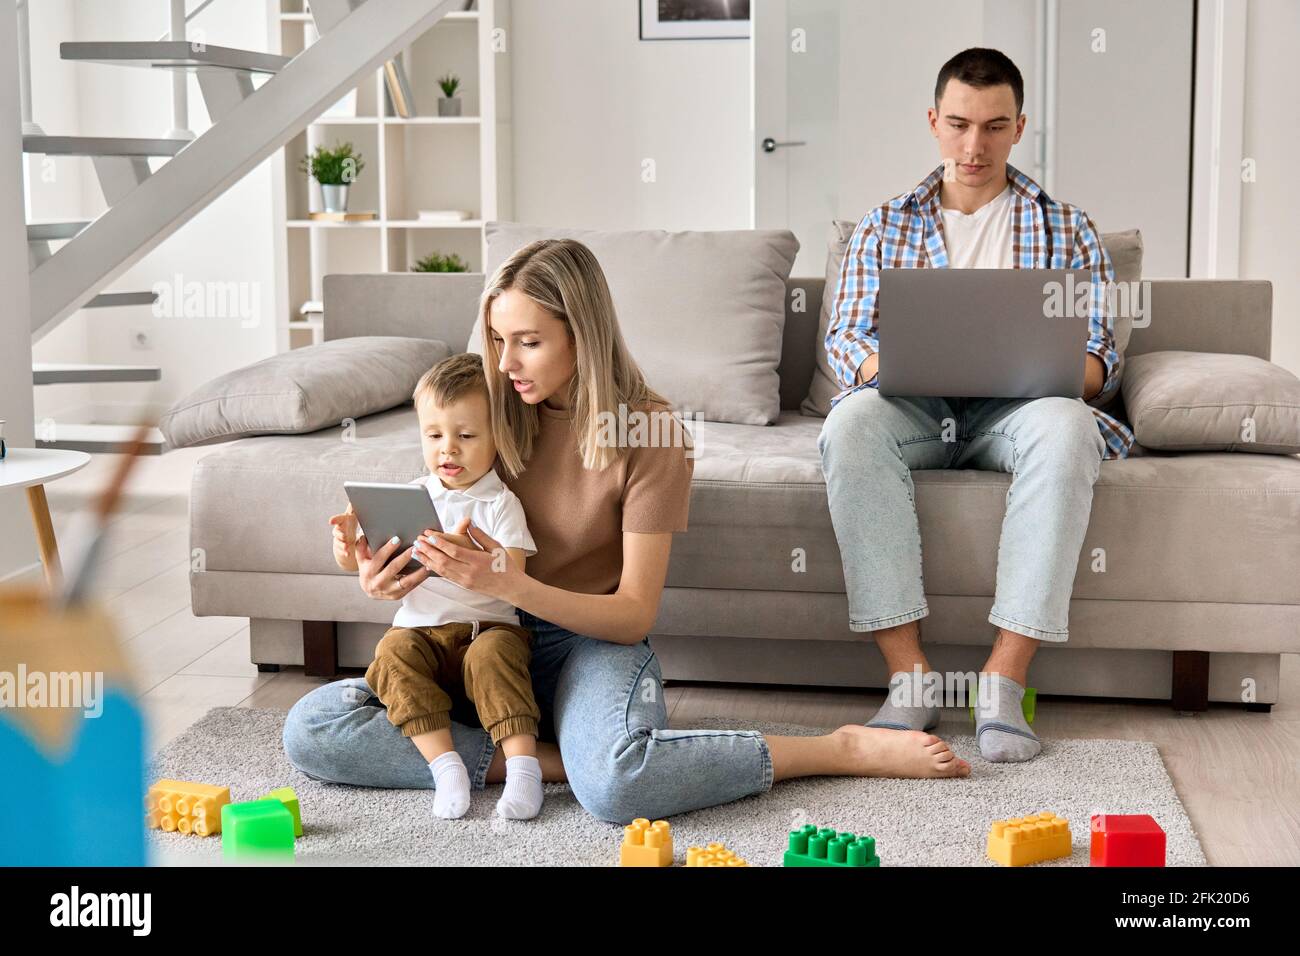 Junge Familie zu Hause, Mama und Kind schauen sich Filme auf dem Tablet an, Papa arbeitet am pc. Stockfoto